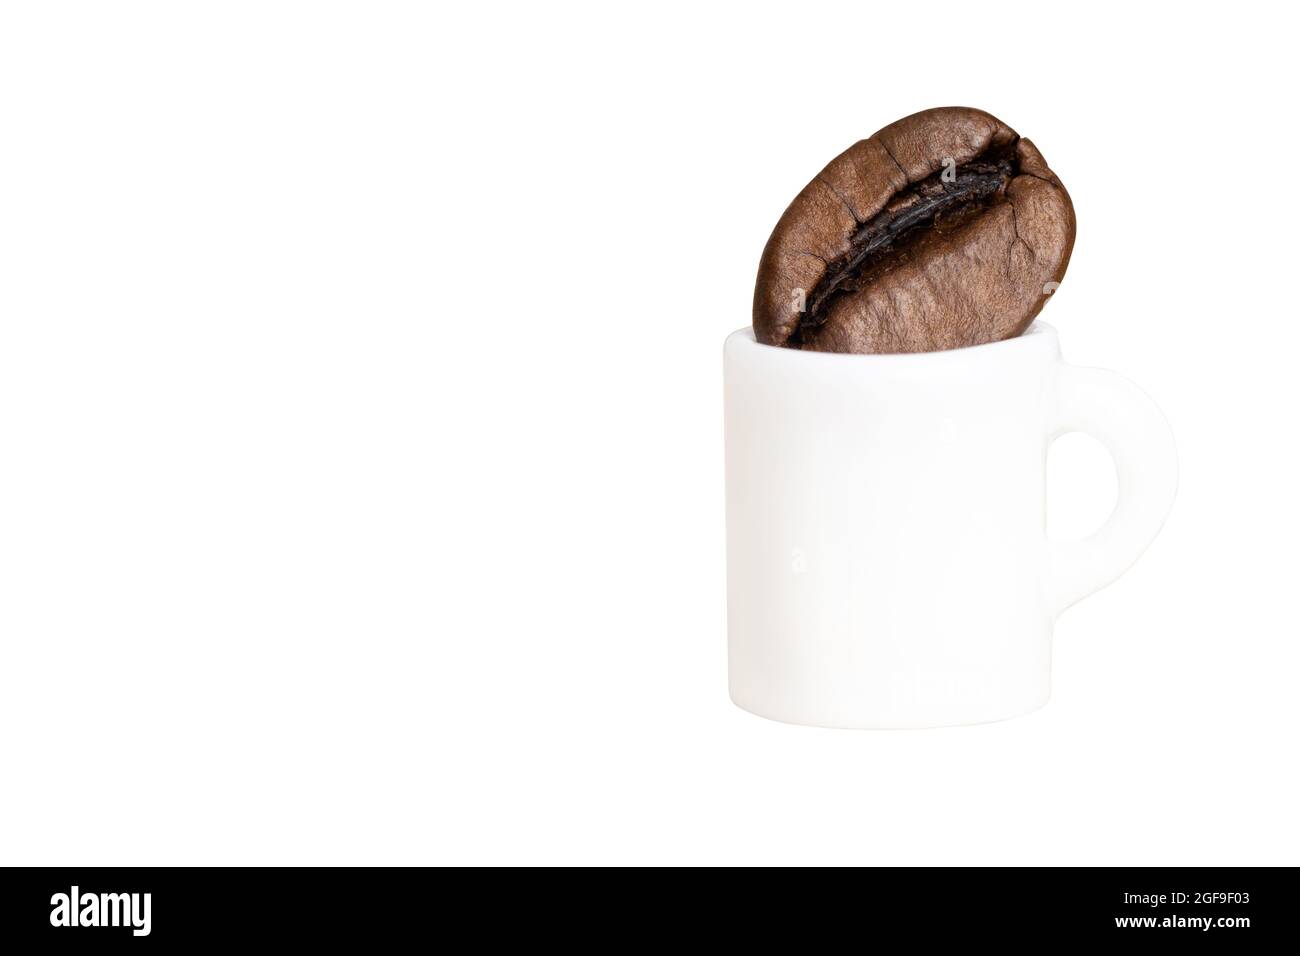 Tazza di caffè in miniatura con un caffè in chicchi isolato su bianco. Senso della proporzione. Foto Stock